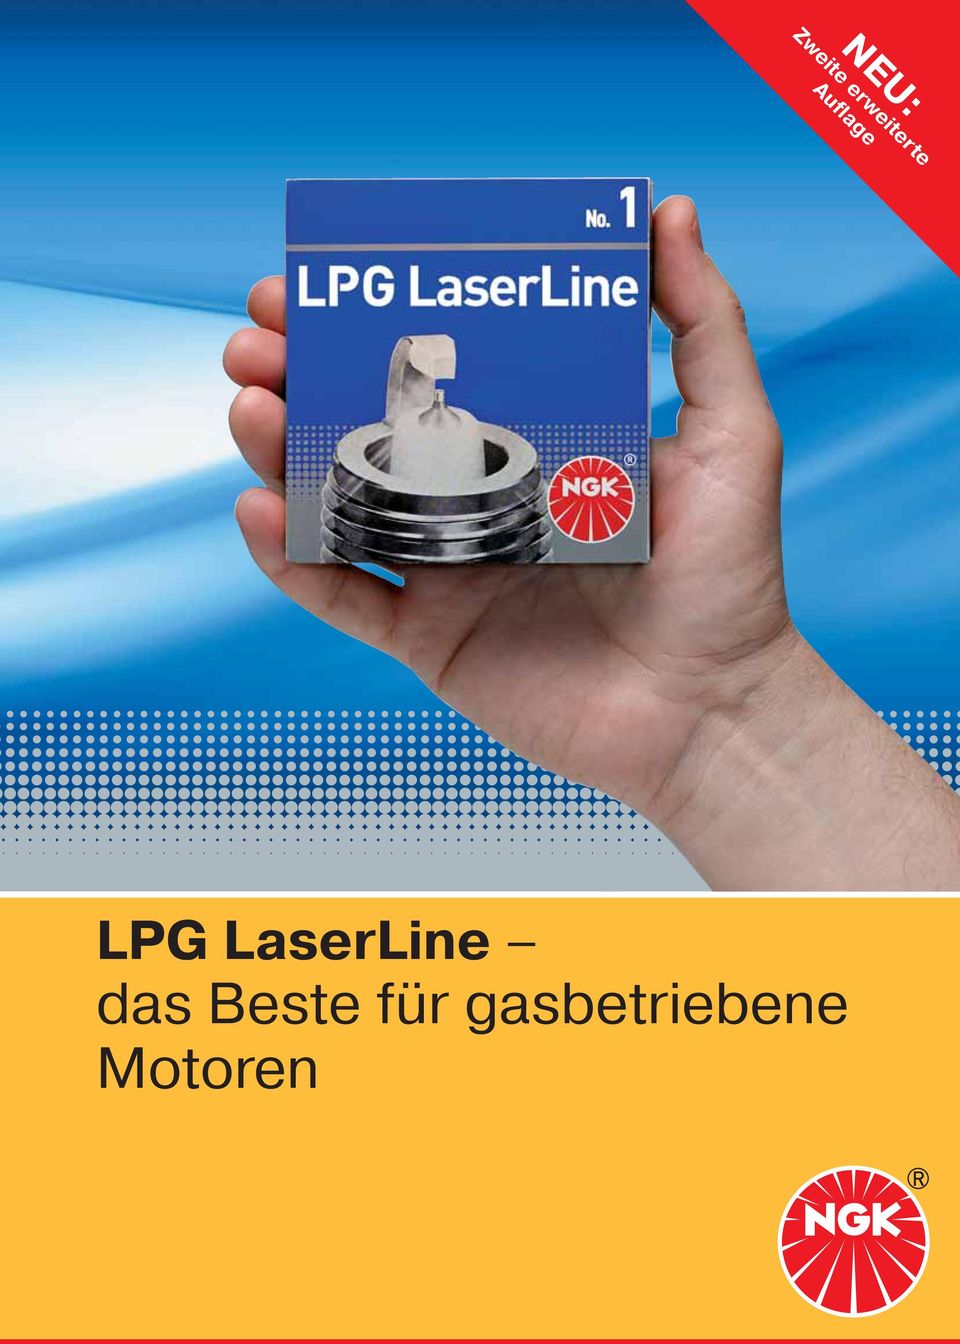 LPG LaserLine das